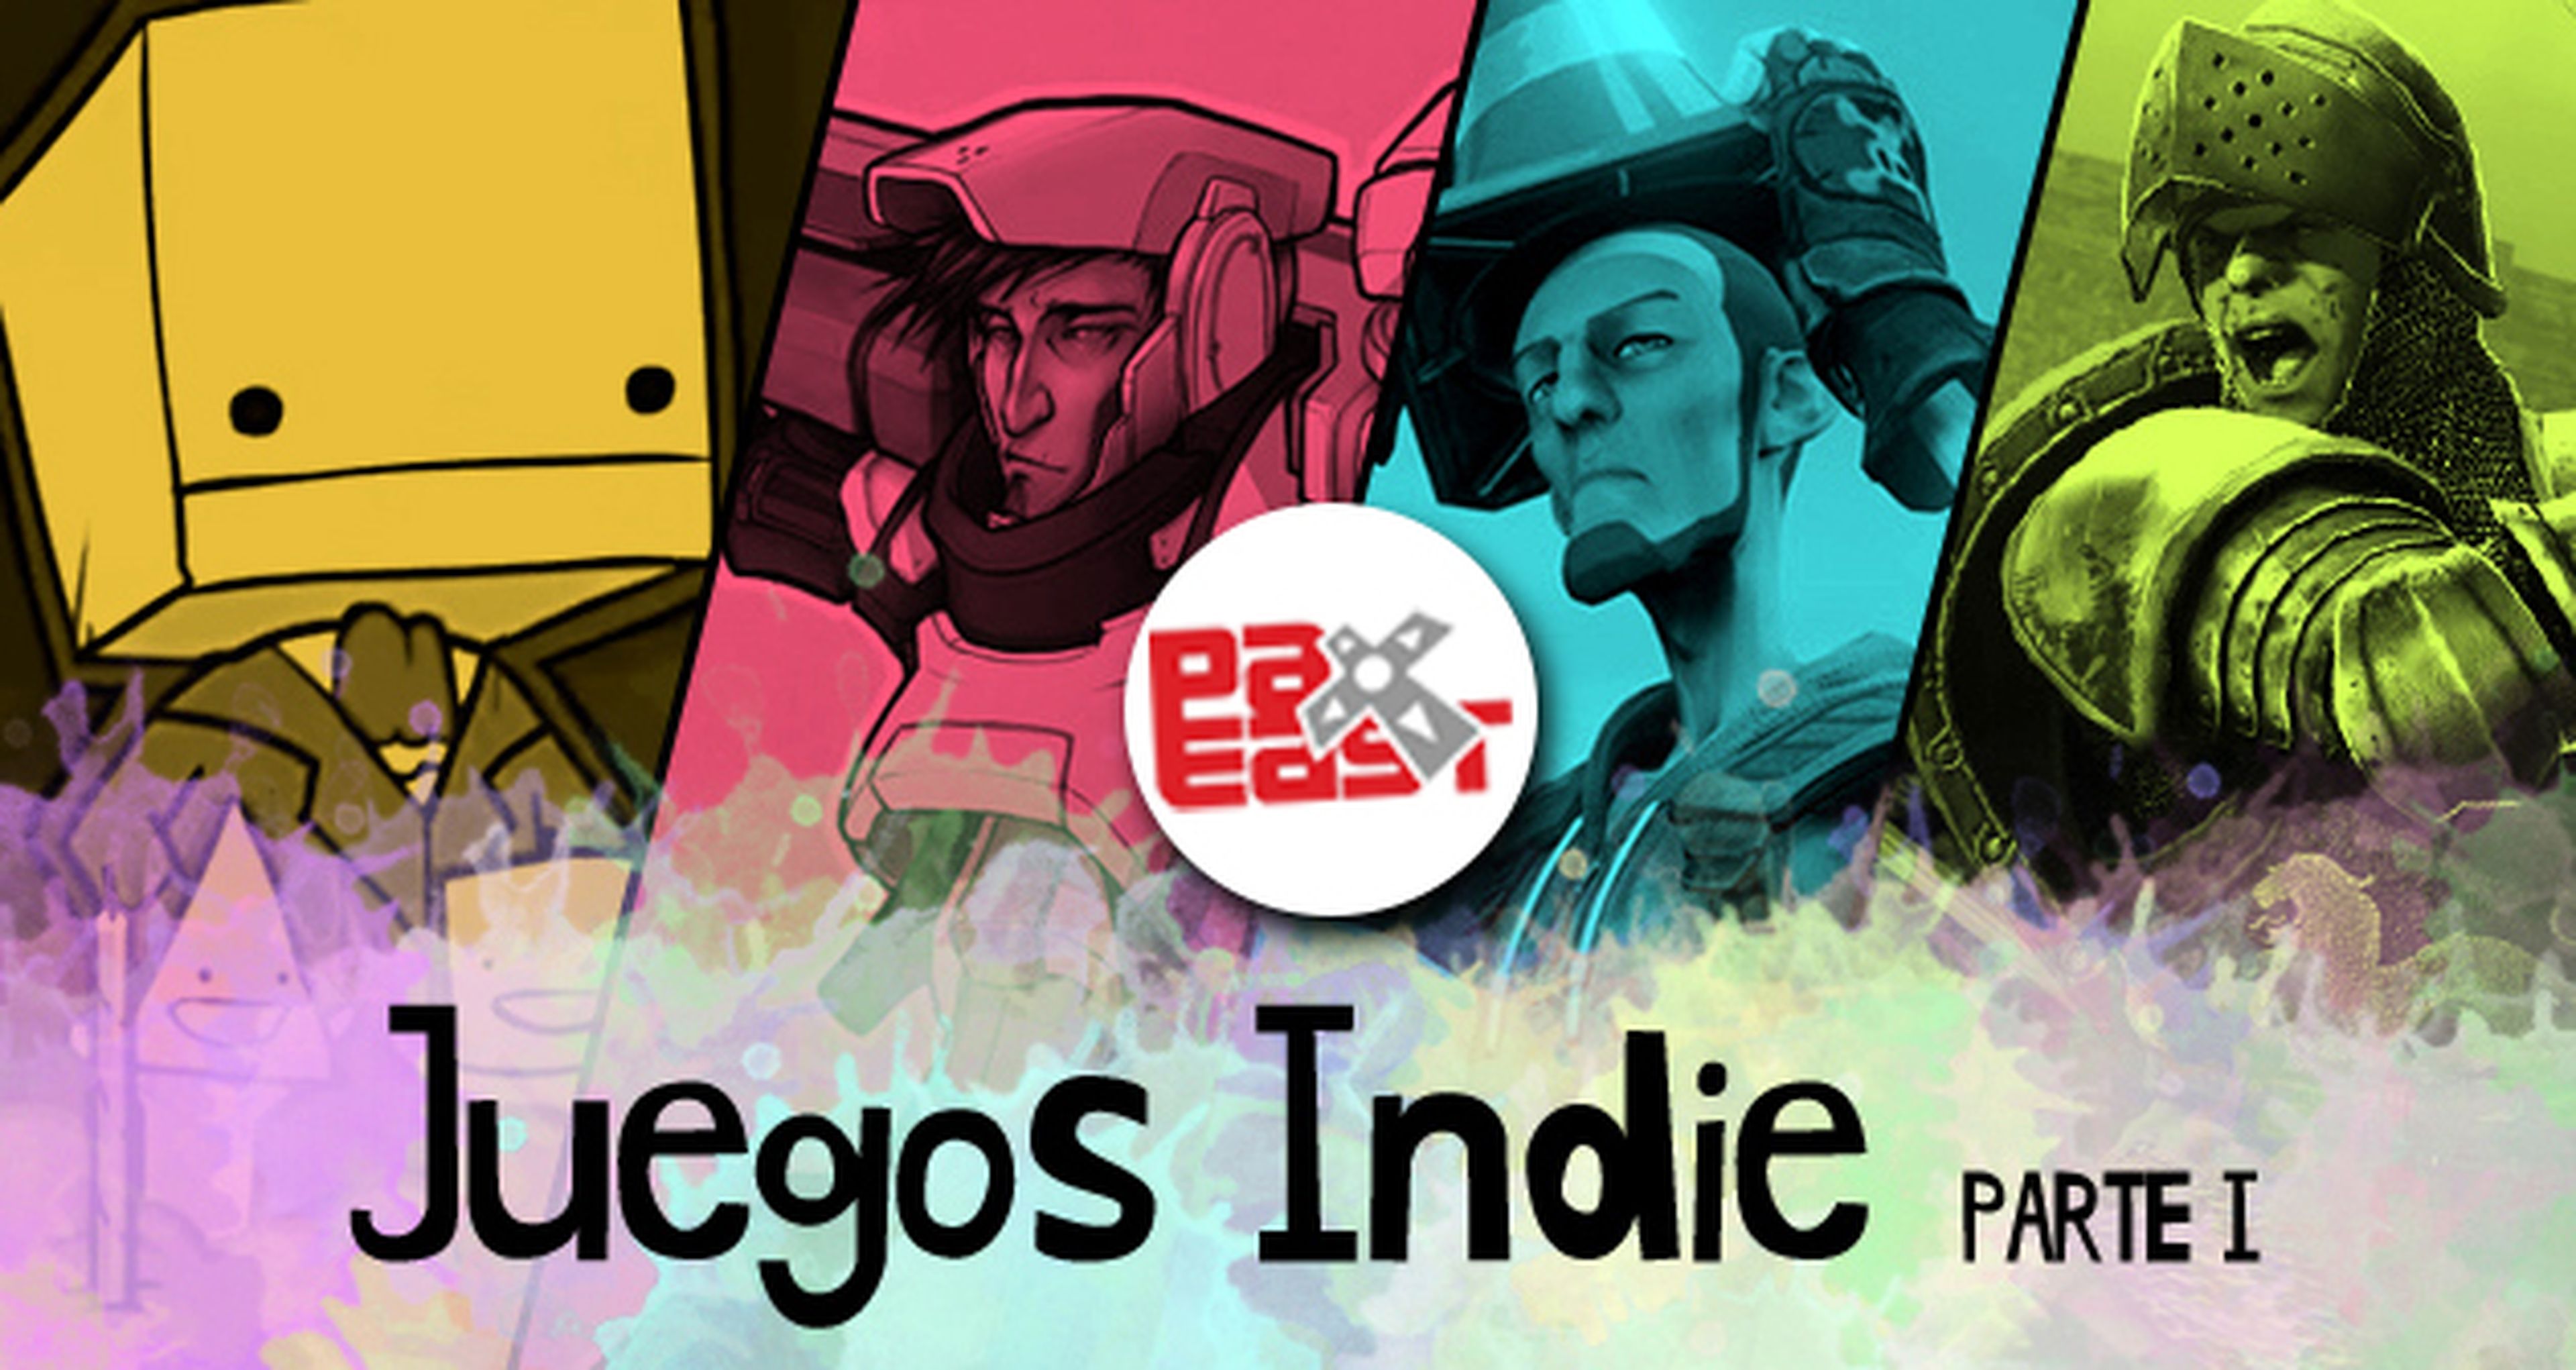 Hobby Consolas en el Pax East: juegos indie (I)